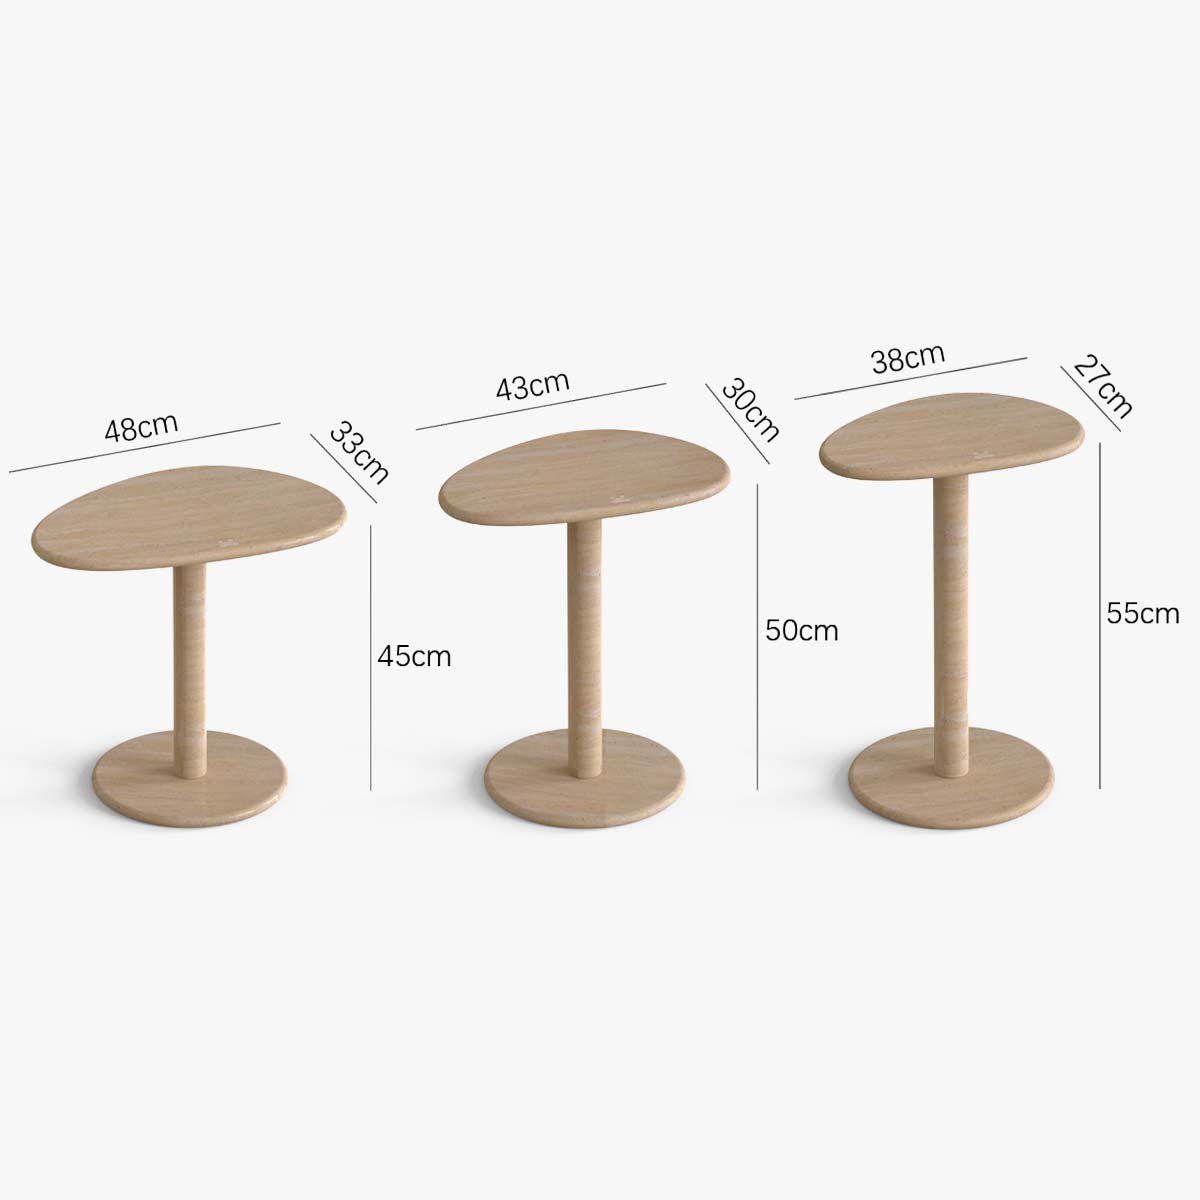 OIXDESIGN, SwanEgg Side Tables, Italian Classico Travertine, Dimension Diagram